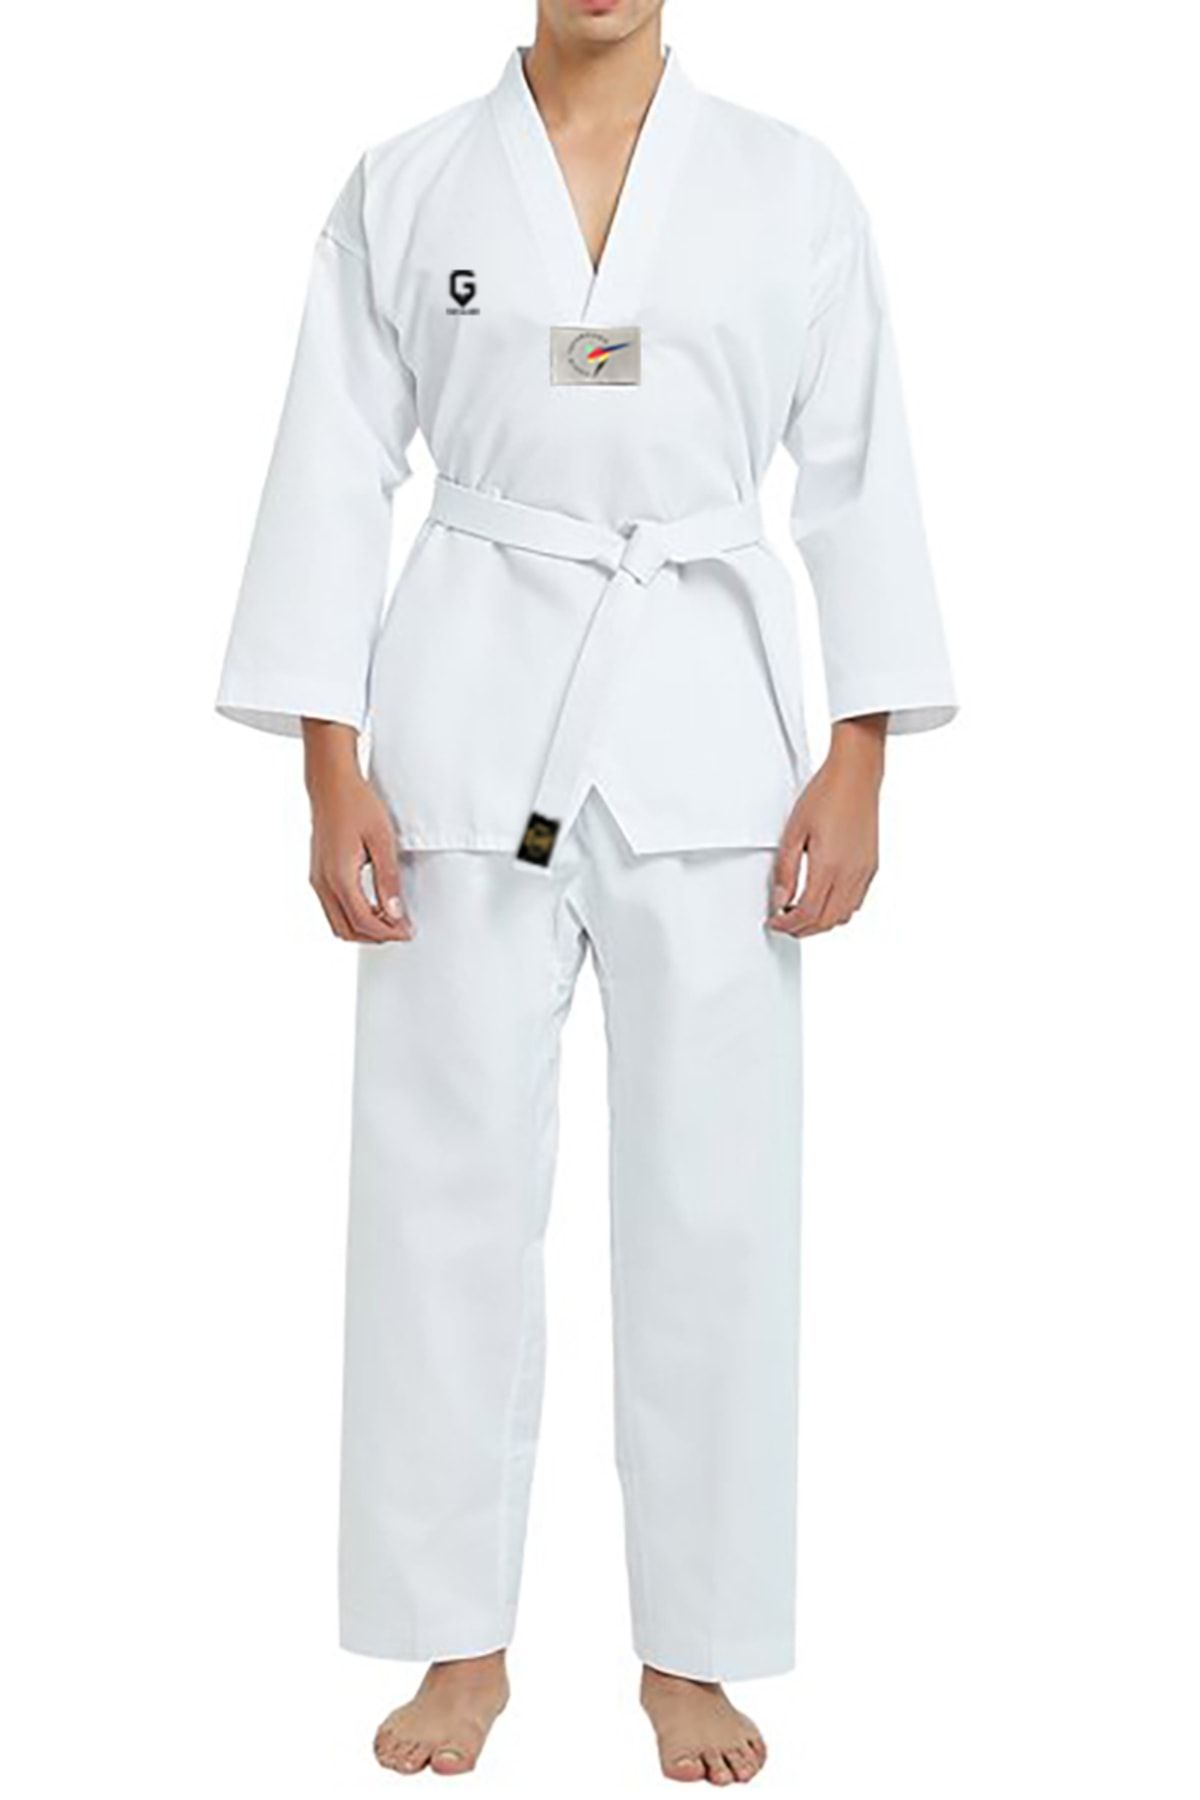 TOP GLORY Fitilli Beyaz Yaka Baskılı A10 Unisex Taekwondo Elbisesi Dobok